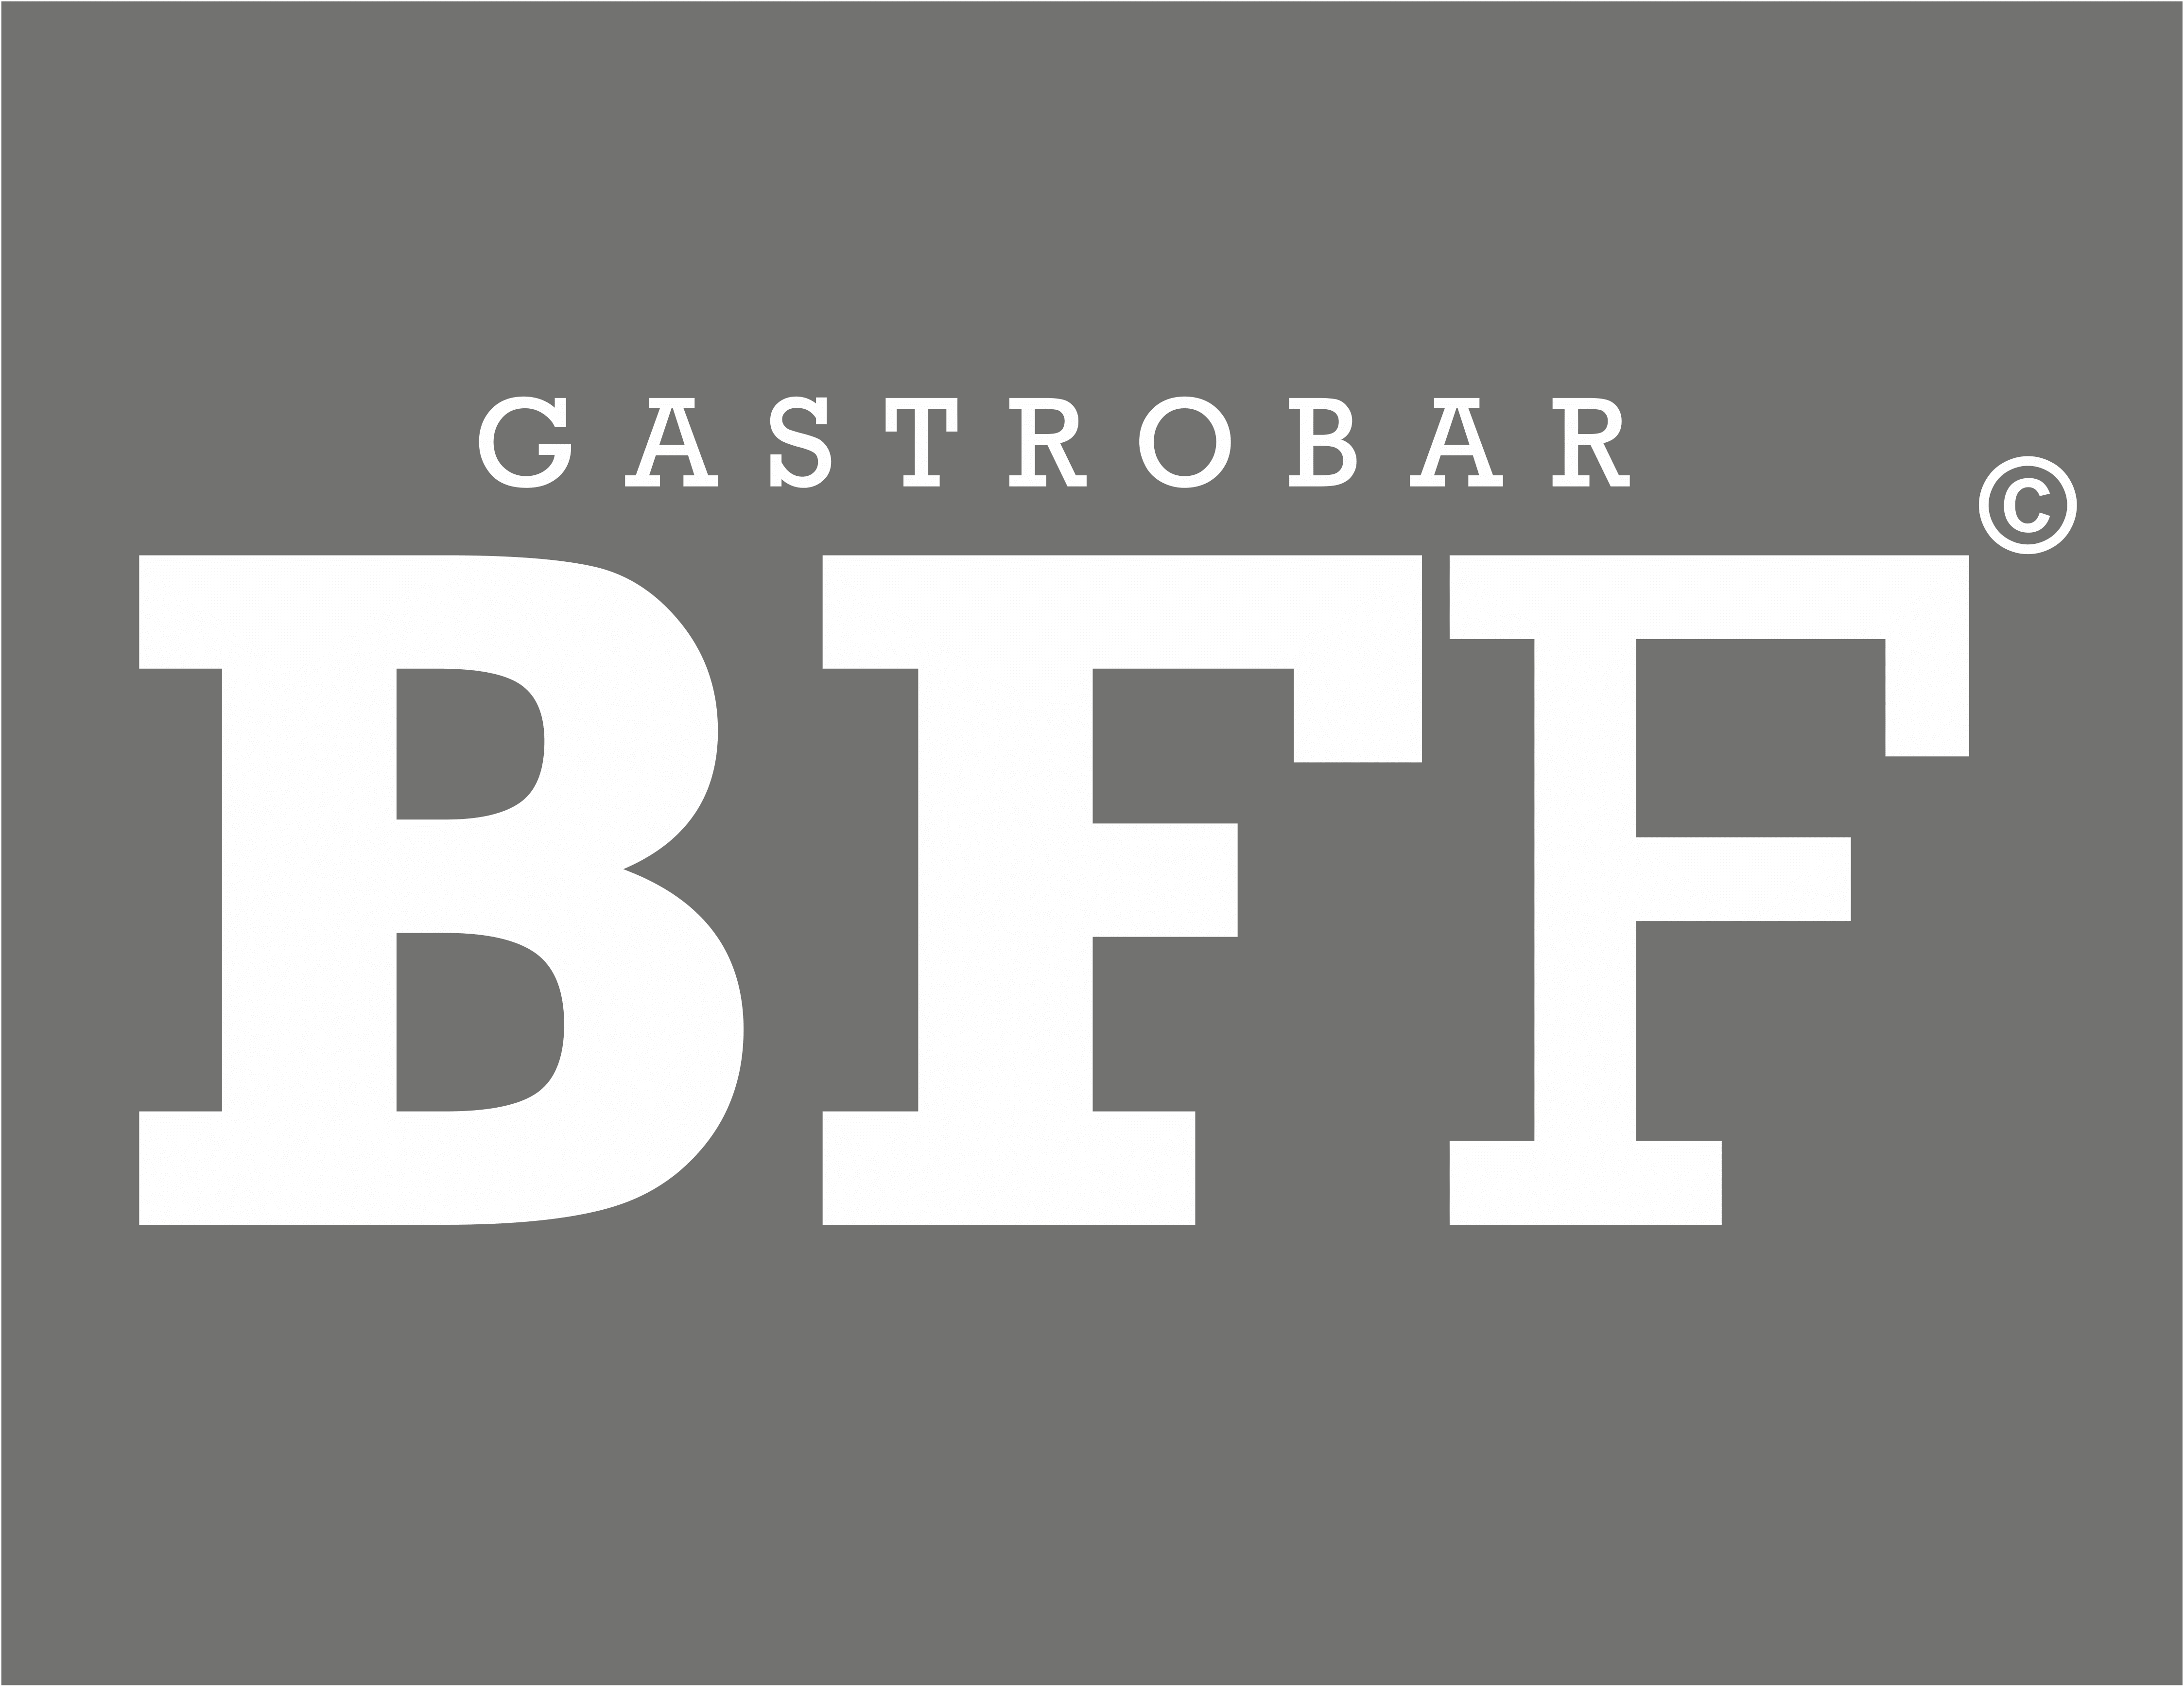 BFF-Gastrobar